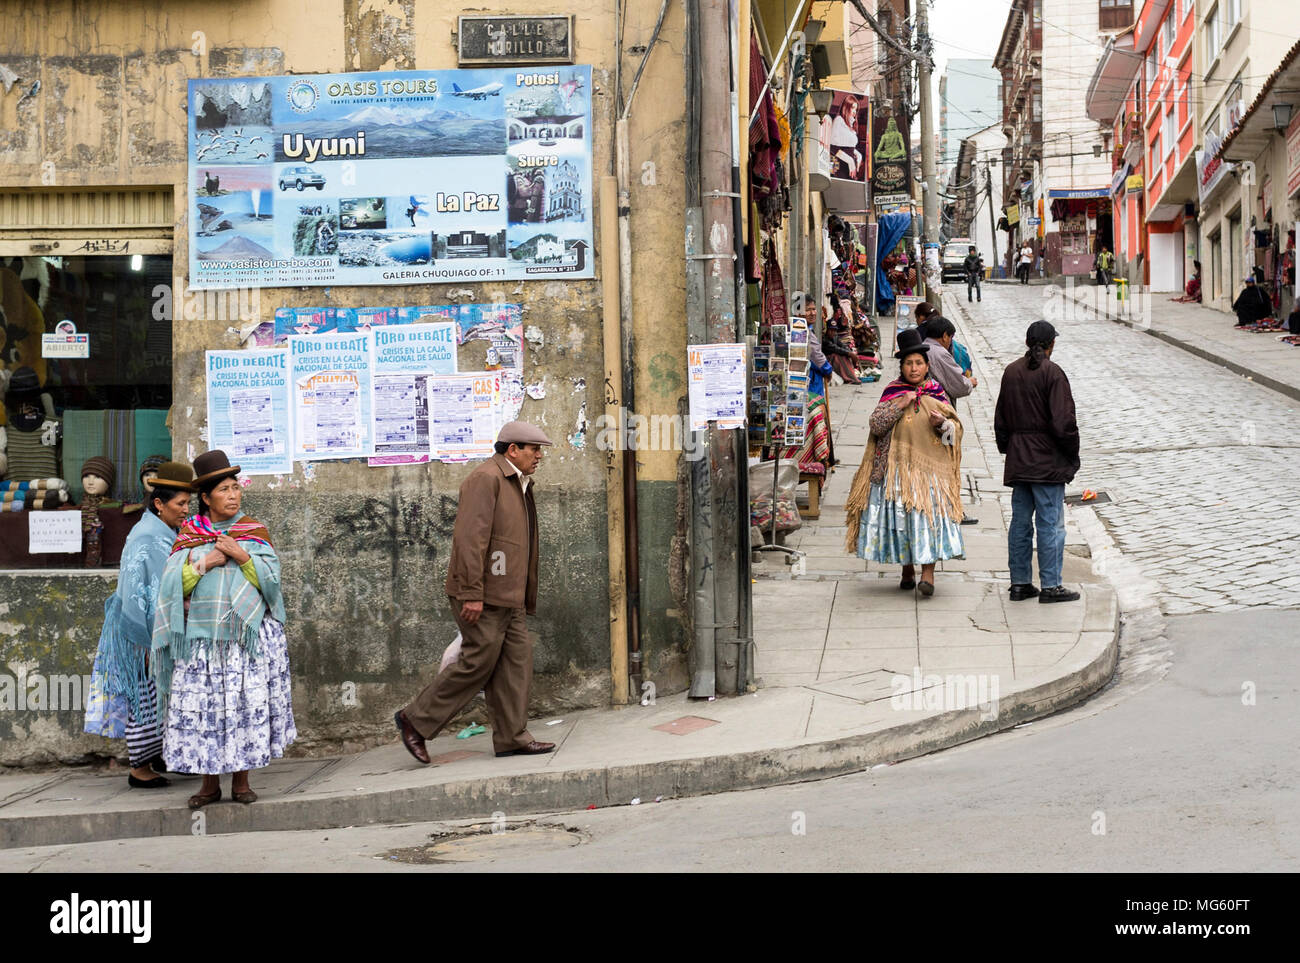 La Paz, Bolivien - Dezember 11, 2011: Bolivianer in einer Nachbarschaft. Stockfoto